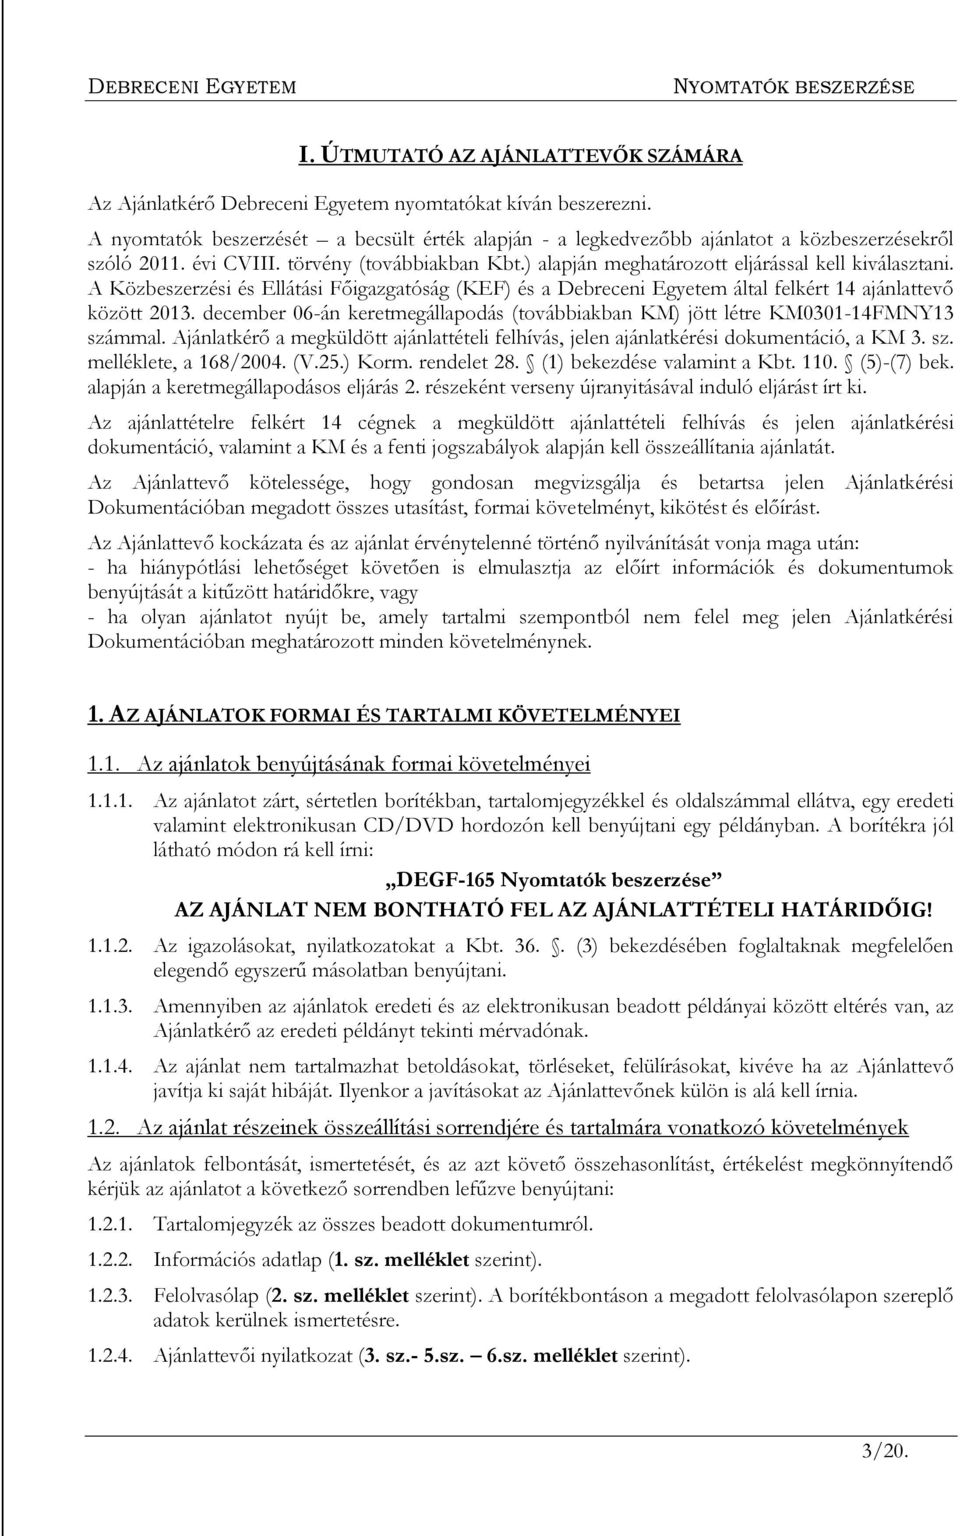 A Közbeszerzési és Ellátási Főigazgatóság (KEF) és a Debreceni Egyetem által felkért 14 ajánlattevő között 2013. december 06-án keretmegállapodás (továbbiakban KM) jött létre KM0301-14FMNY13 számmal.